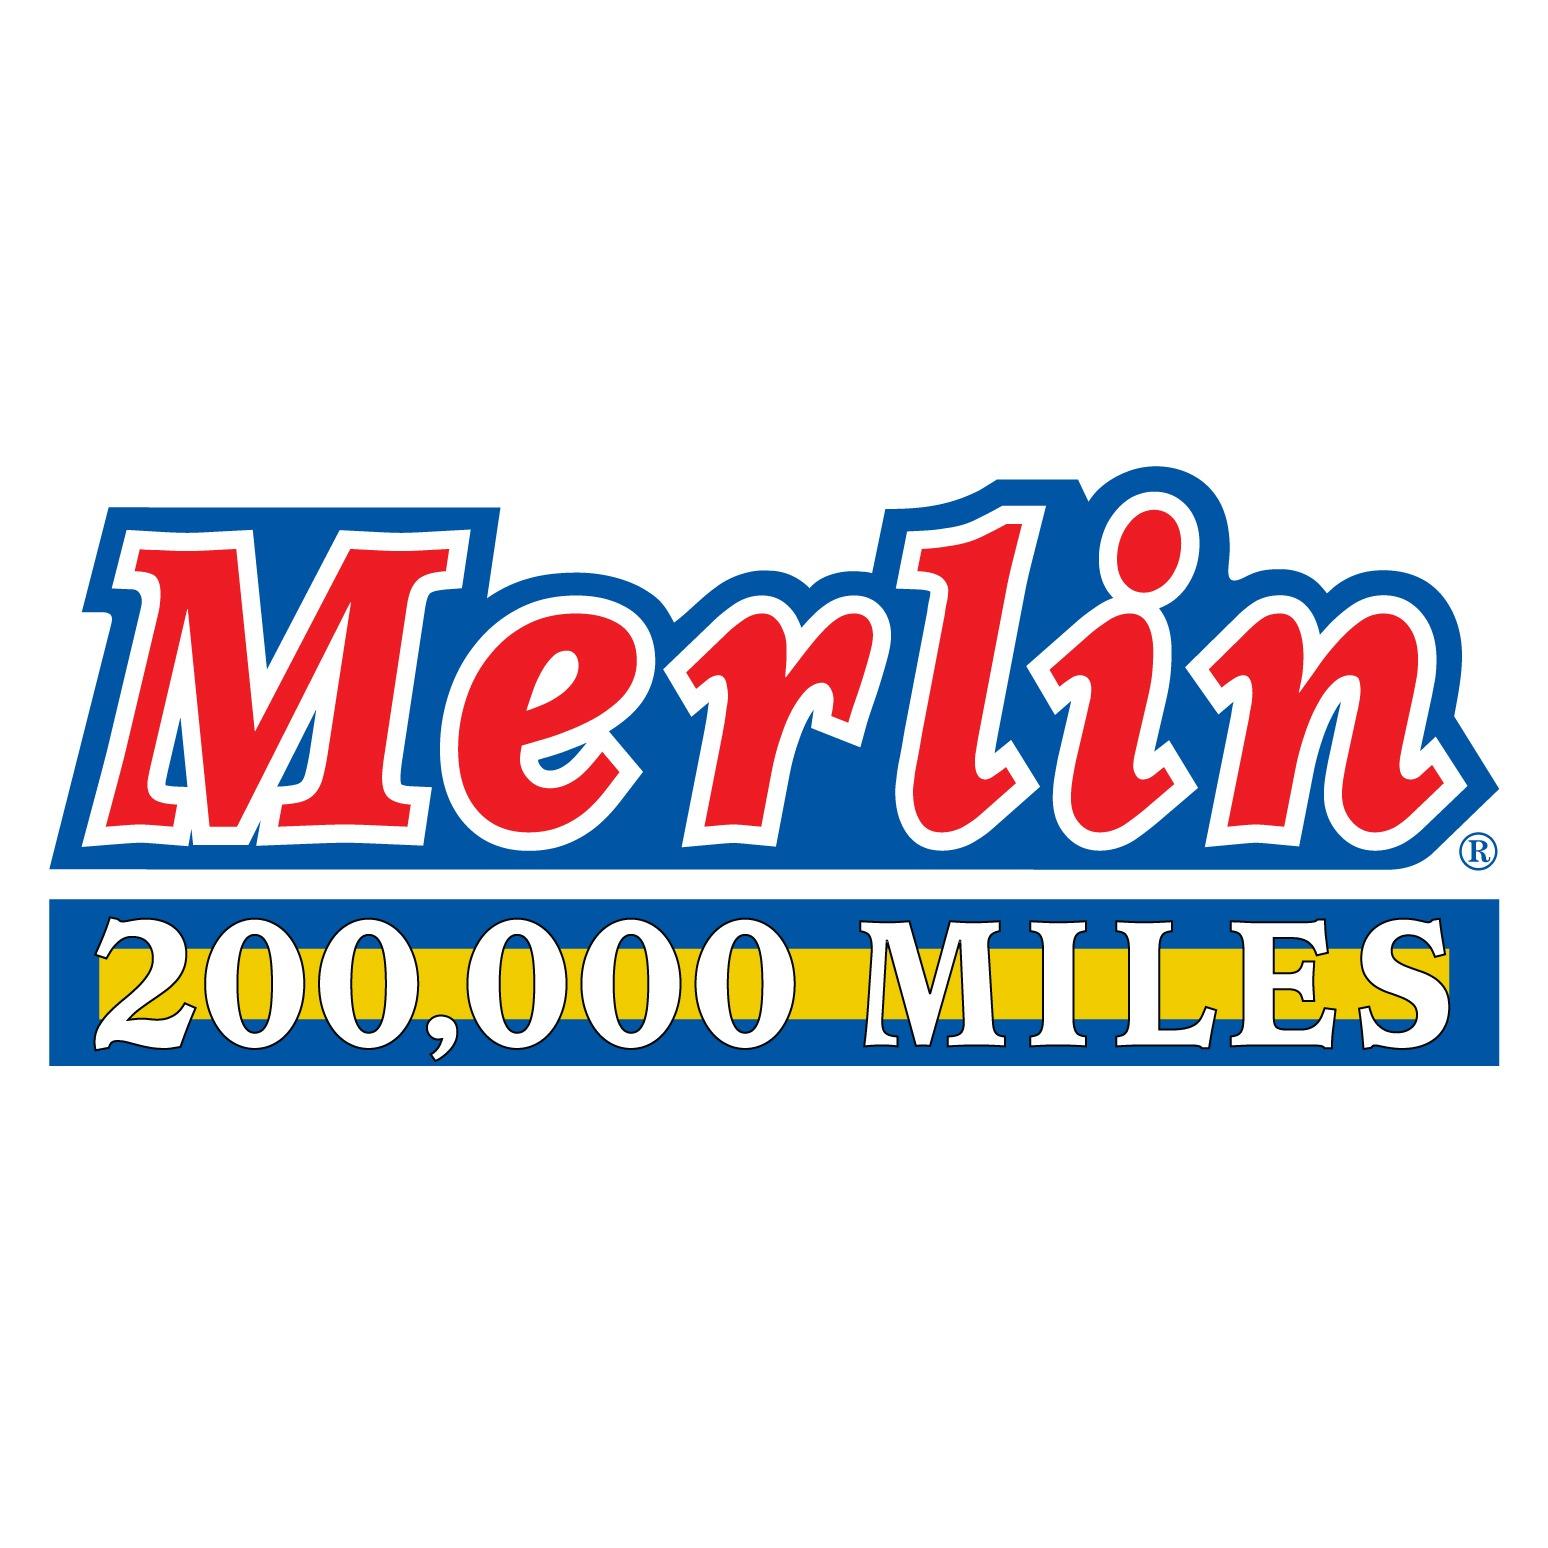 Merlin Complete Auto Care Logo